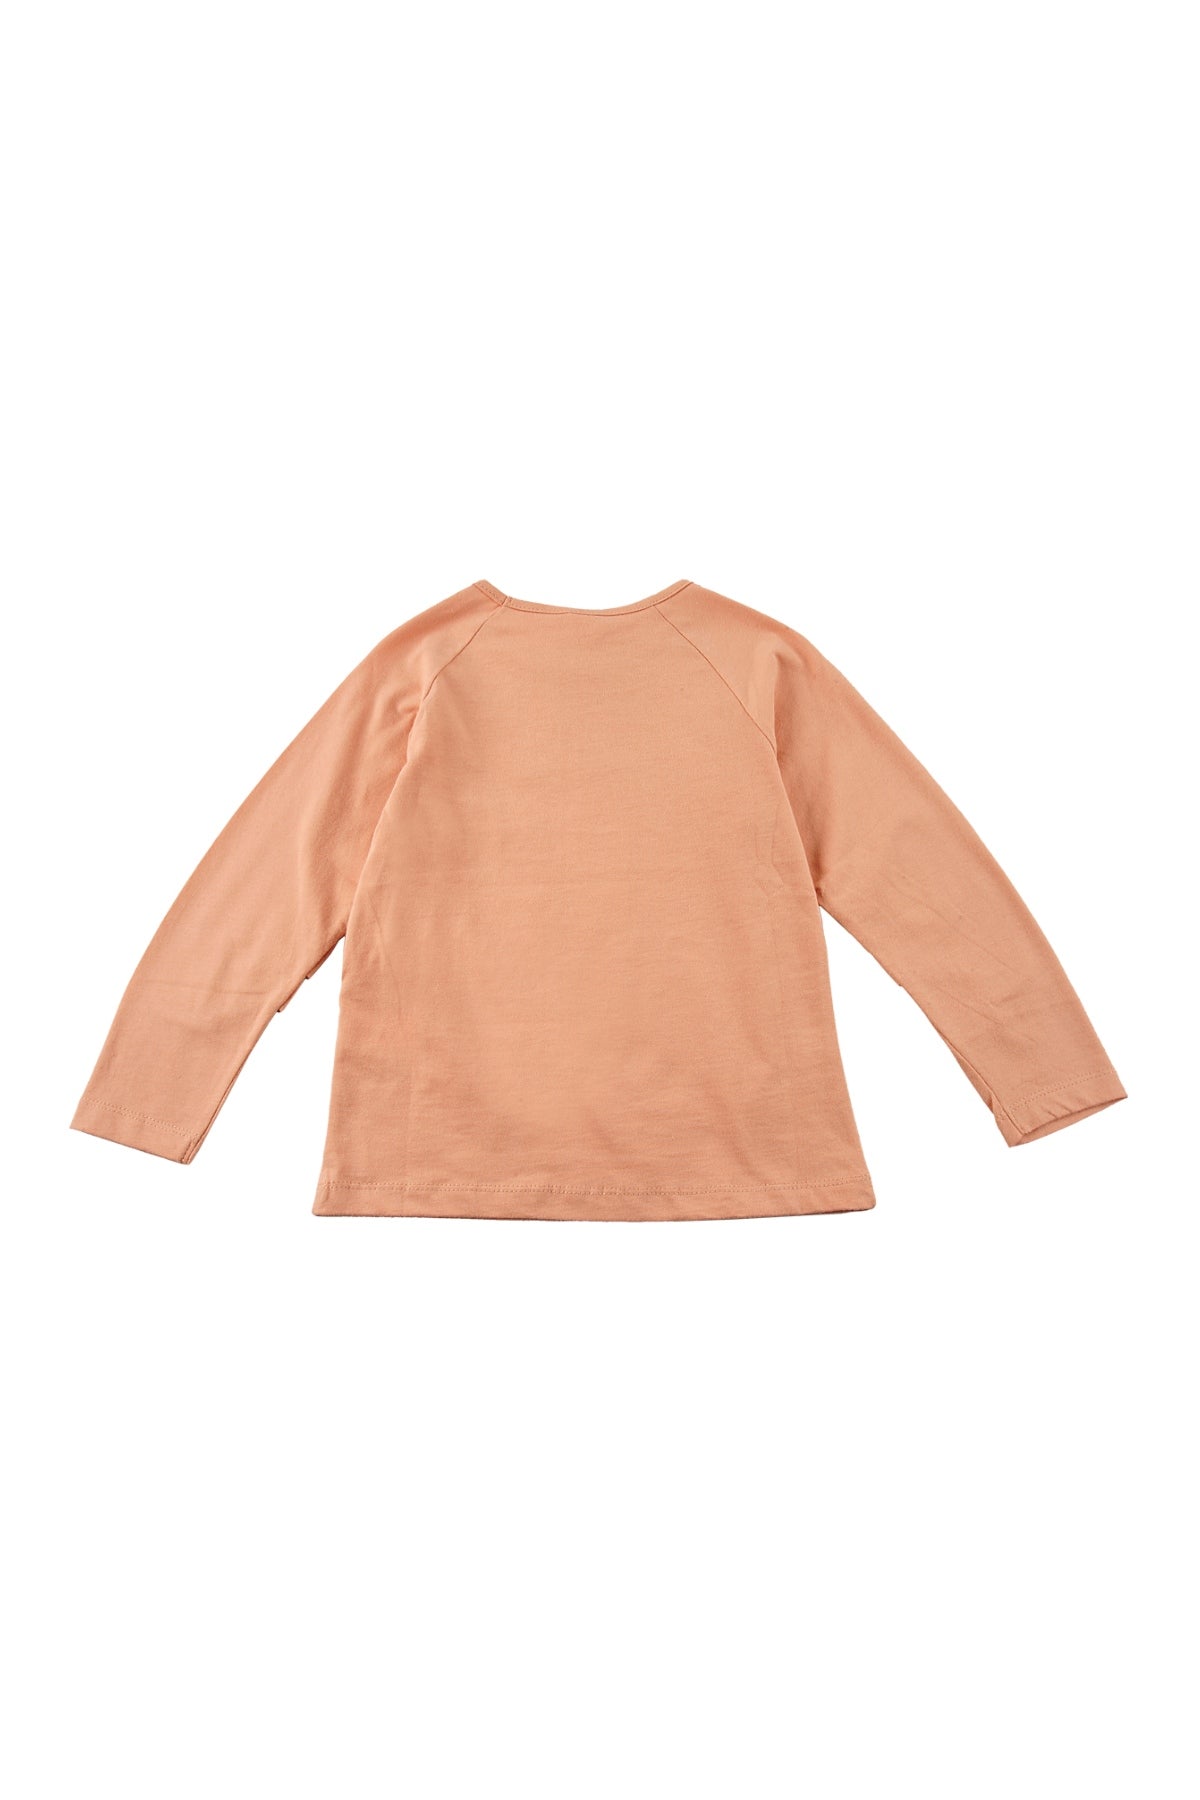 Kız Bebek Pudra Kolları Büzgülü Baskılı T-Shirt (9ay-4yaş)-2